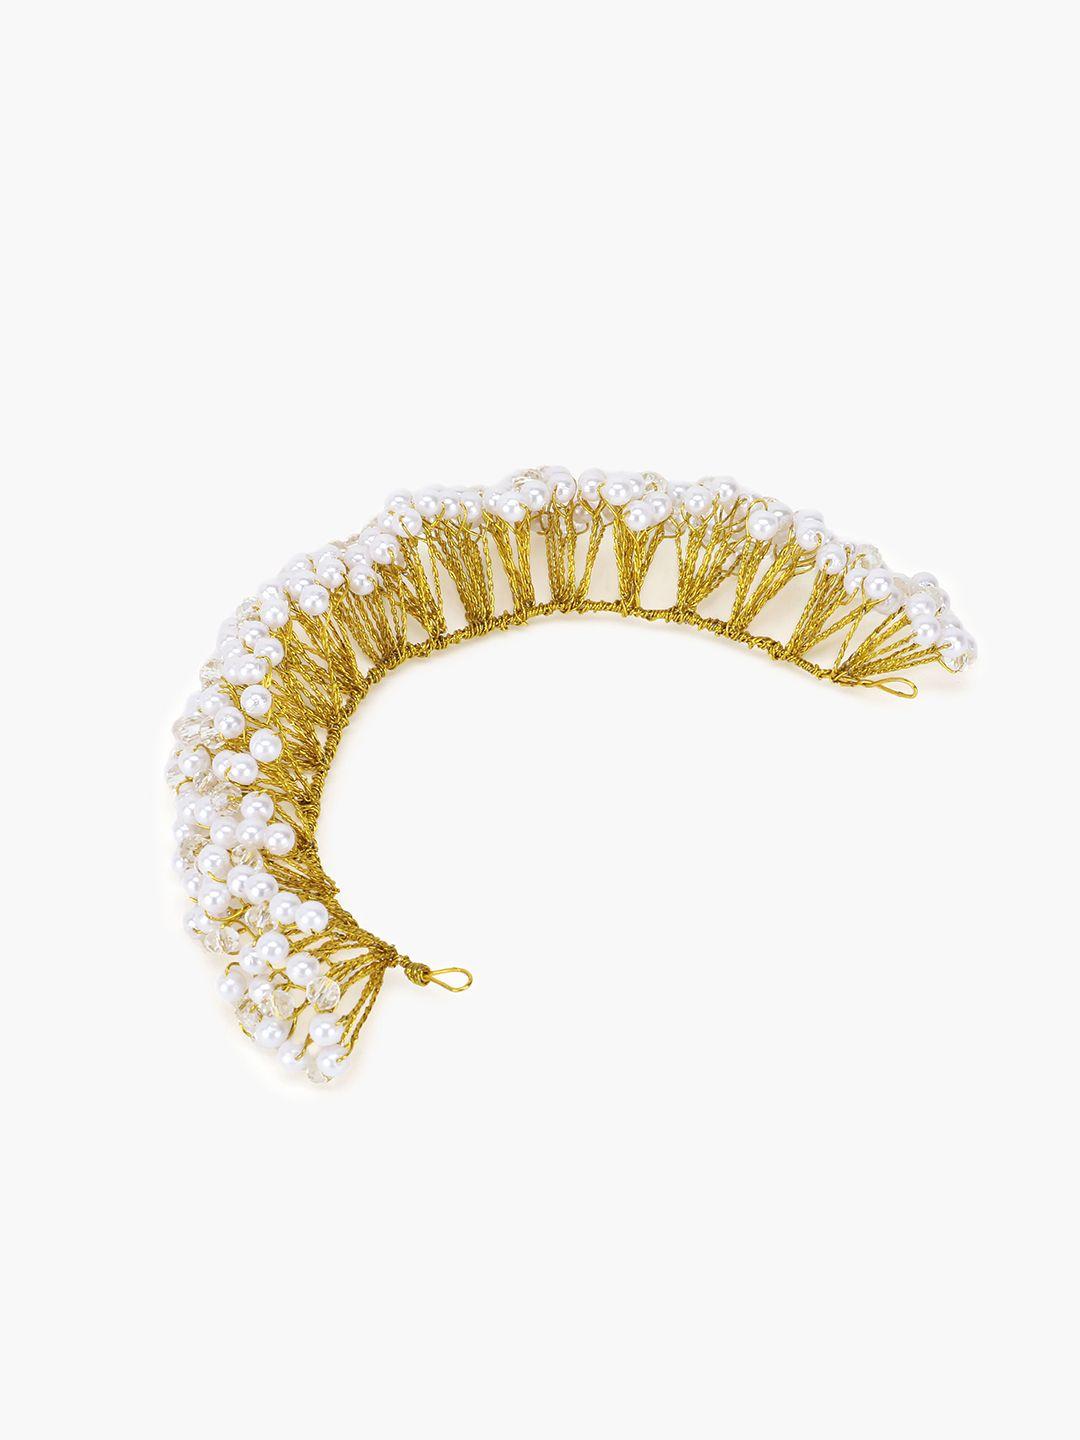 vaghbhatt women gold-toned & white pearl headdress hair vine wedding tiara